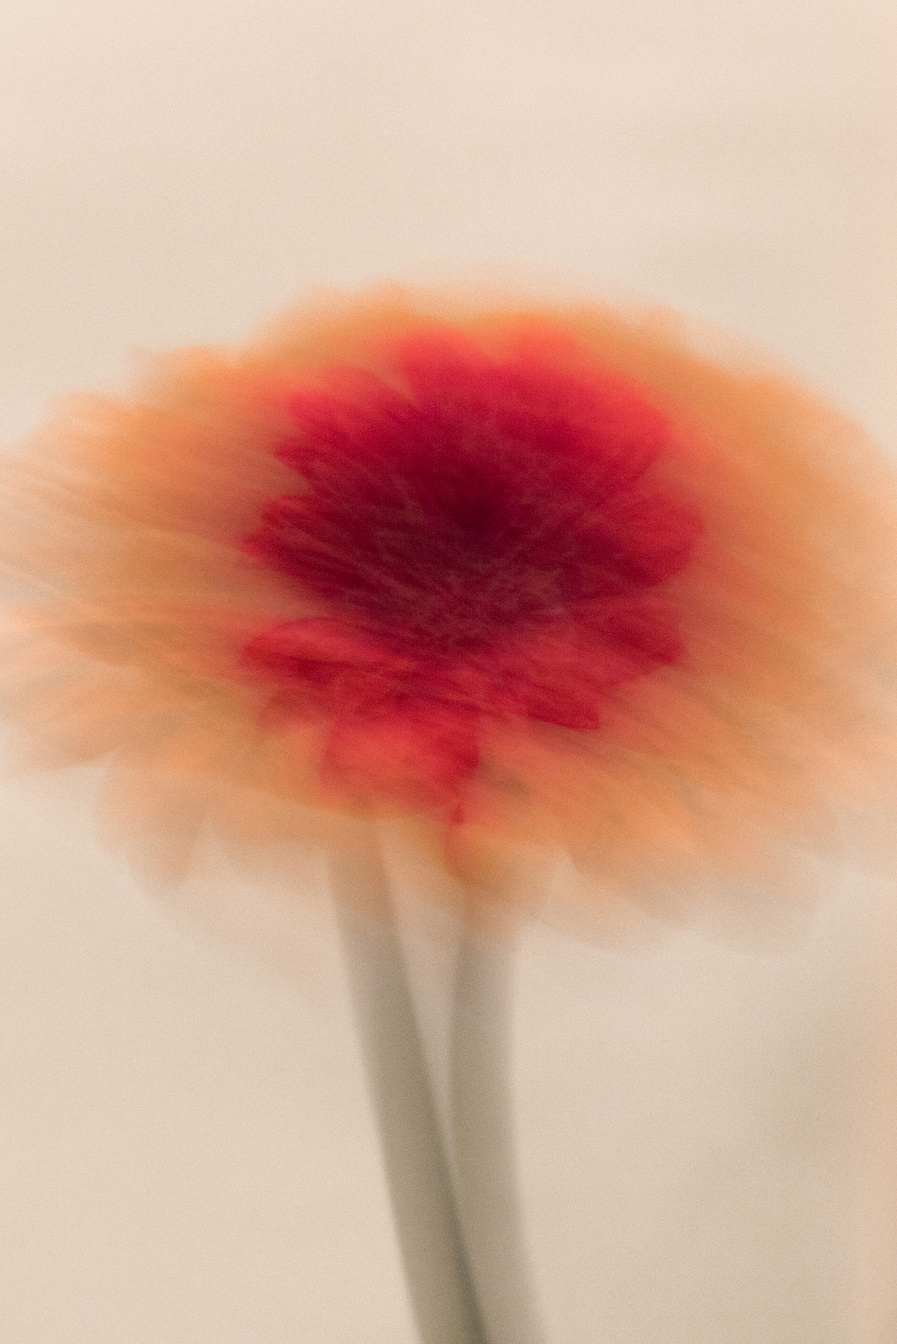 Blurry Orange Flower